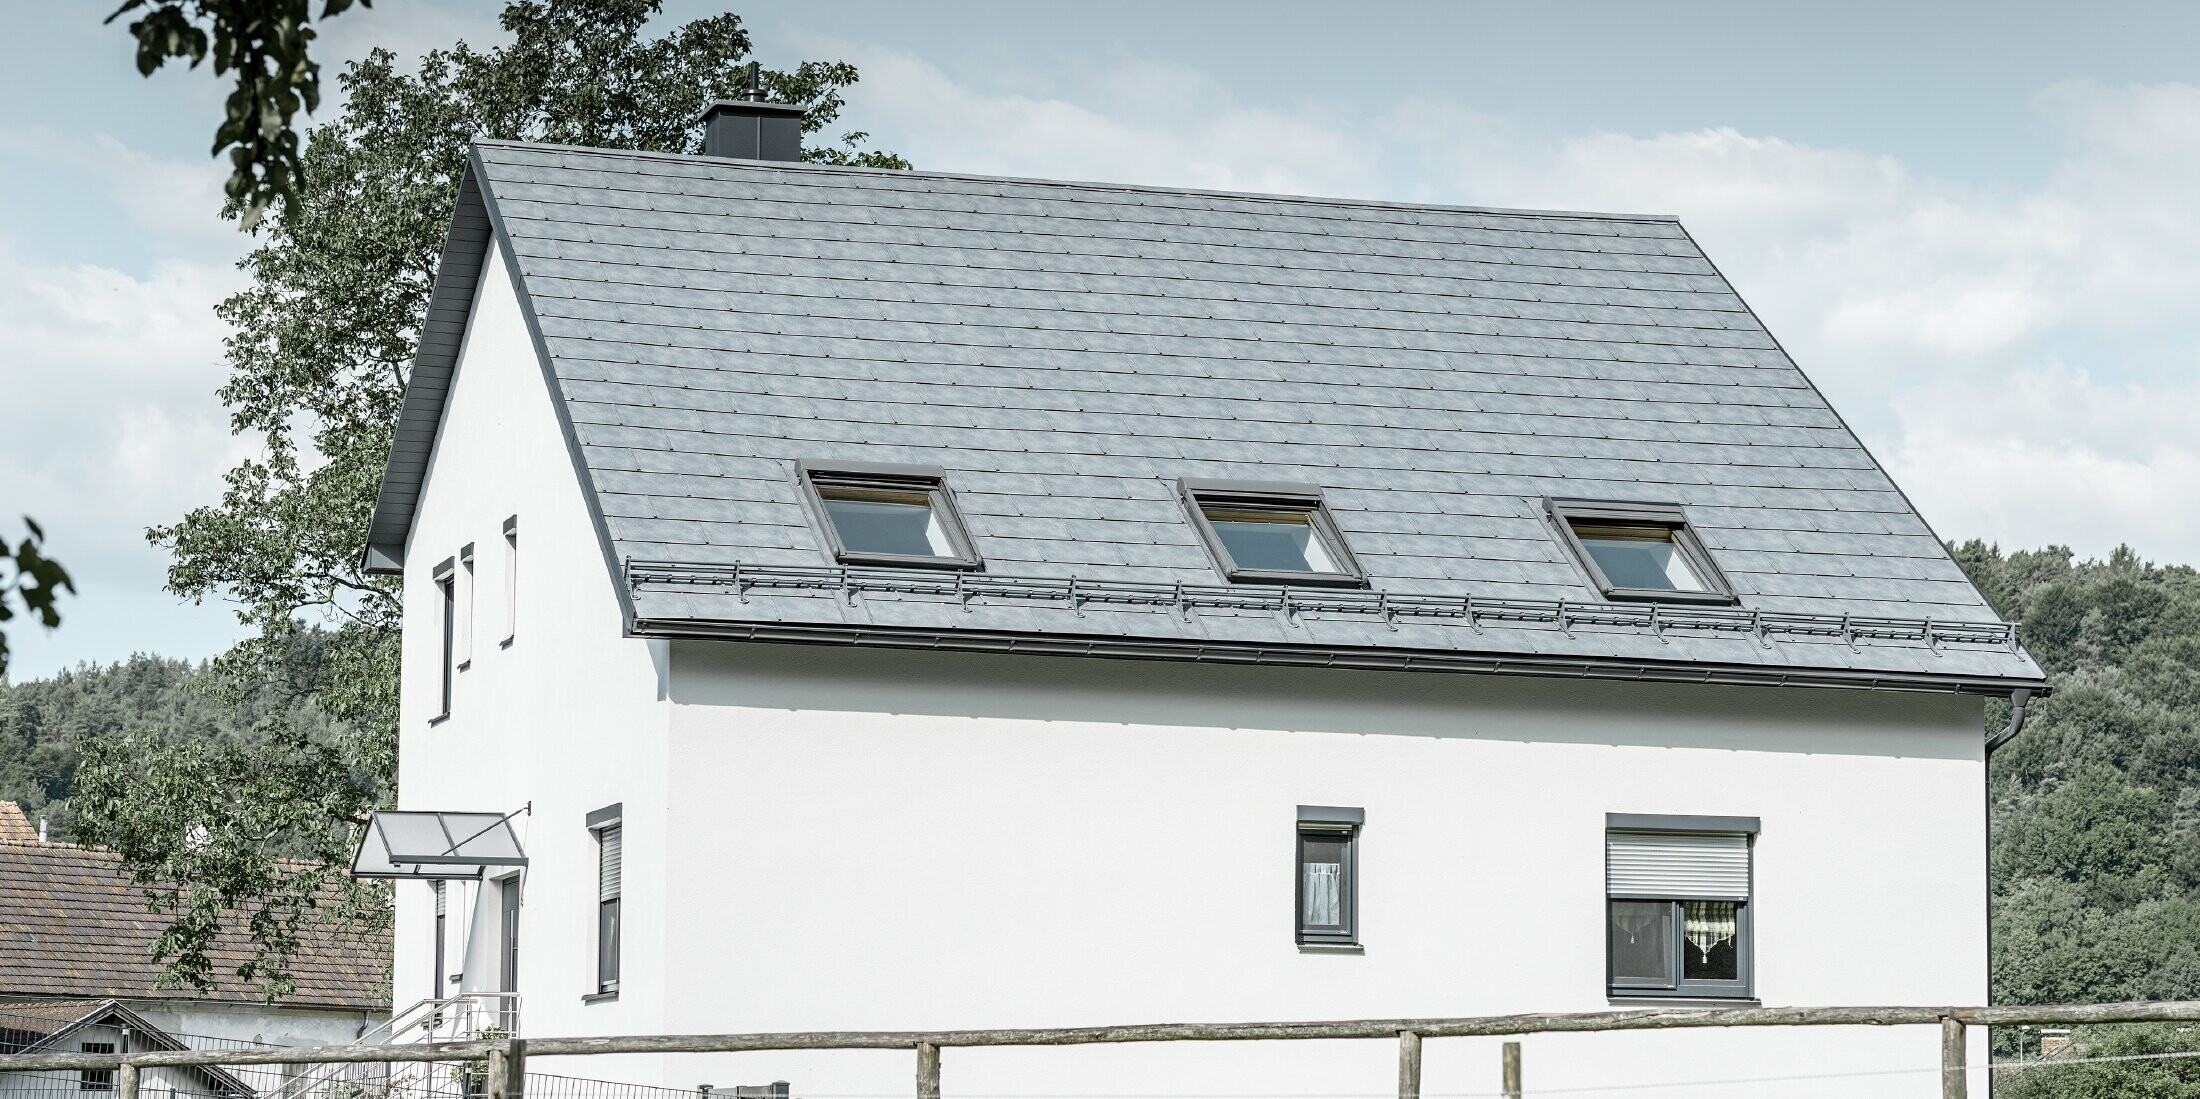 Das Satteldach des klassischen Einfamilienhauses wurde mit der neuen PREFA Dachplatte R.16 in Steingrau eingedeckt. In der Dachfläche wurden drei Dachfenster eingefügt und Schneerechen montiert. Die Fassade ist einfach in Weiß gehalten.